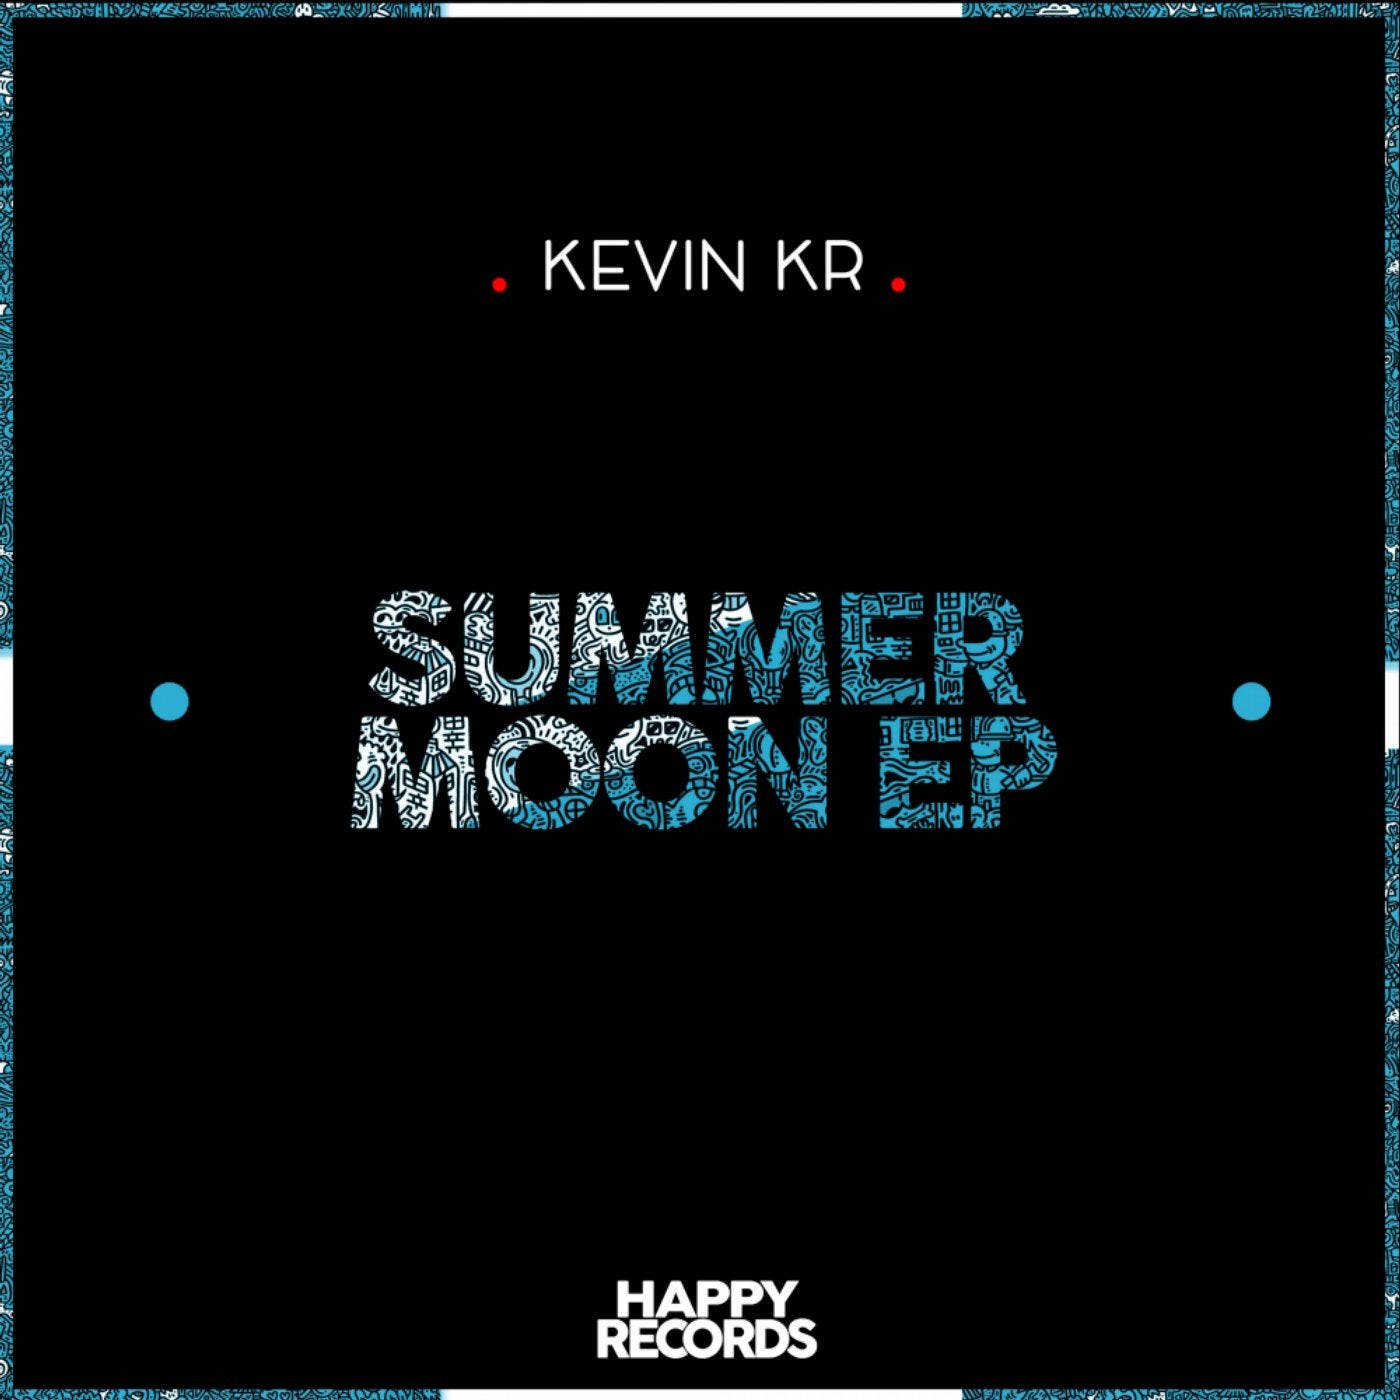 Summer Moon EP